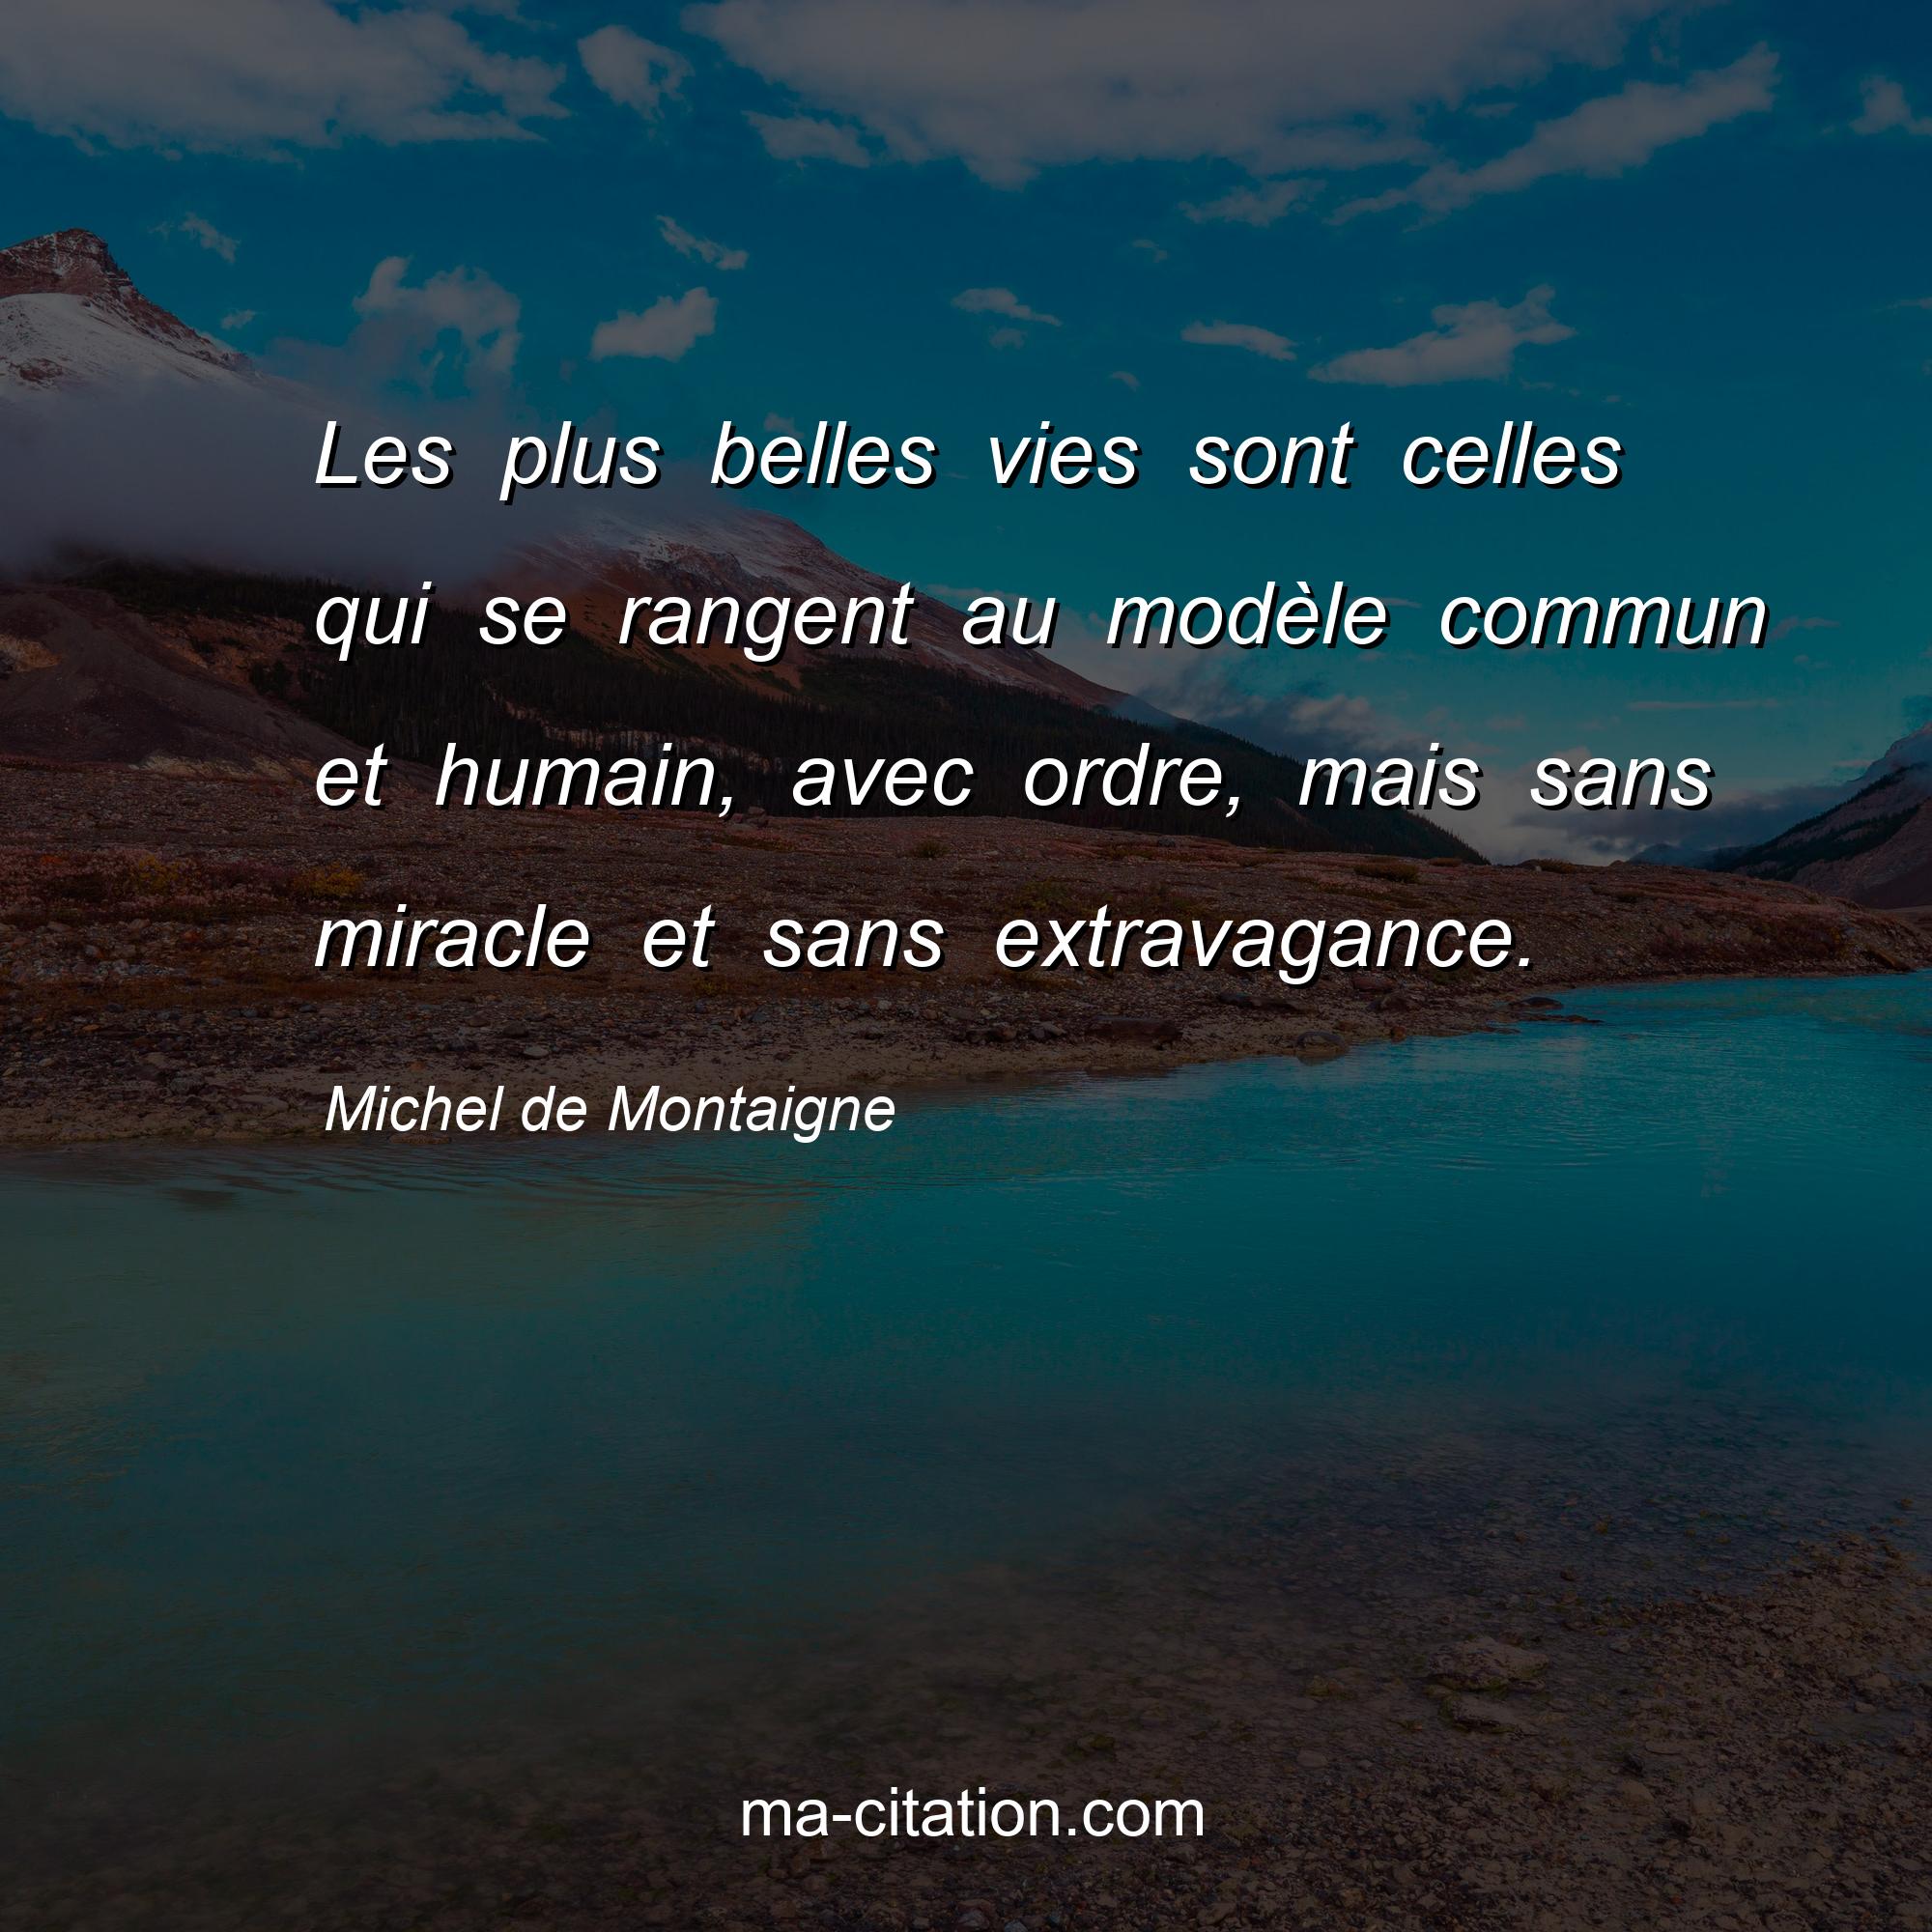 Michel de Montaigne : Les plus belles vies sont celles qui se rangent au modèle commun et humain, avec ordre, mais sans miracle et sans extravagance.